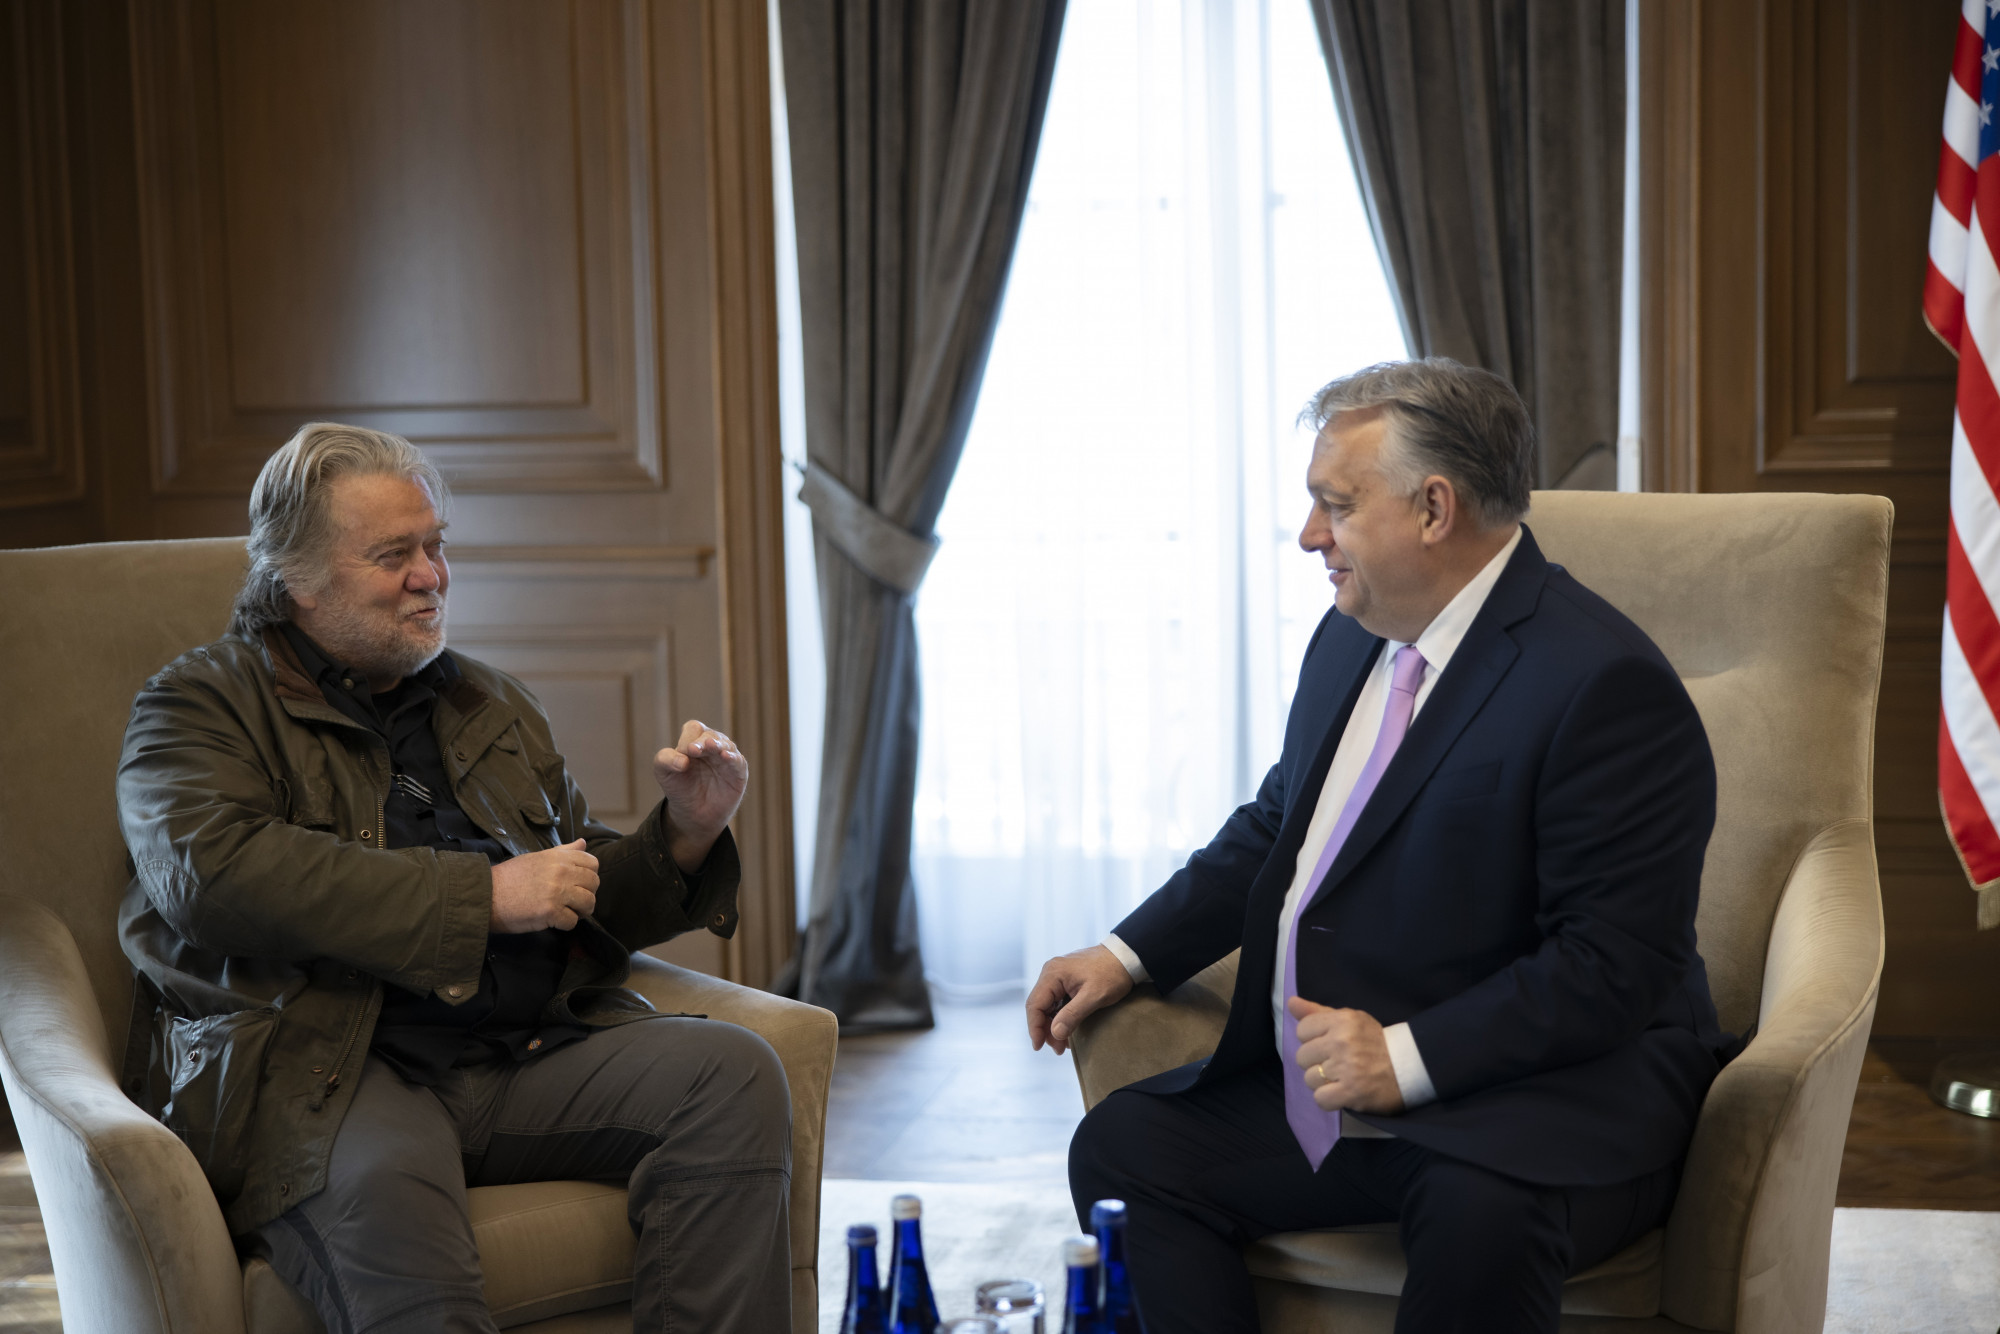 Egy kolostorból újították volna meg a populizmust, Bannon most Orbánnal tárgyalt a jobboldali internacionálé új gladiátorképzőjéről